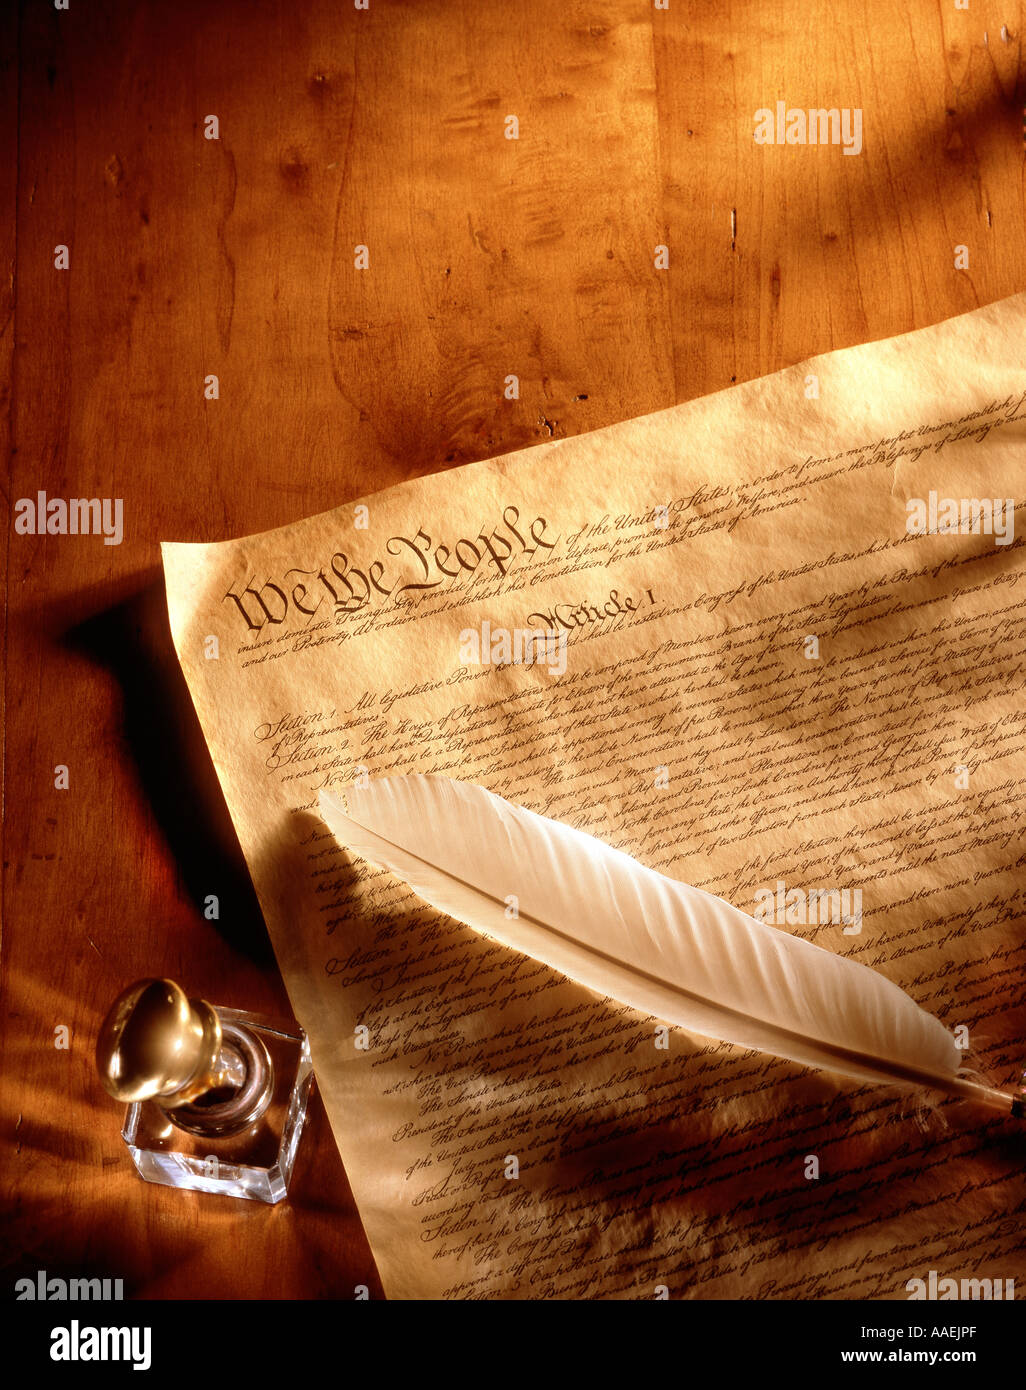 Costituzione degli Stati Uniti sulla superficie di legno con inchiostro e l'inchiostro quill Foto Stock